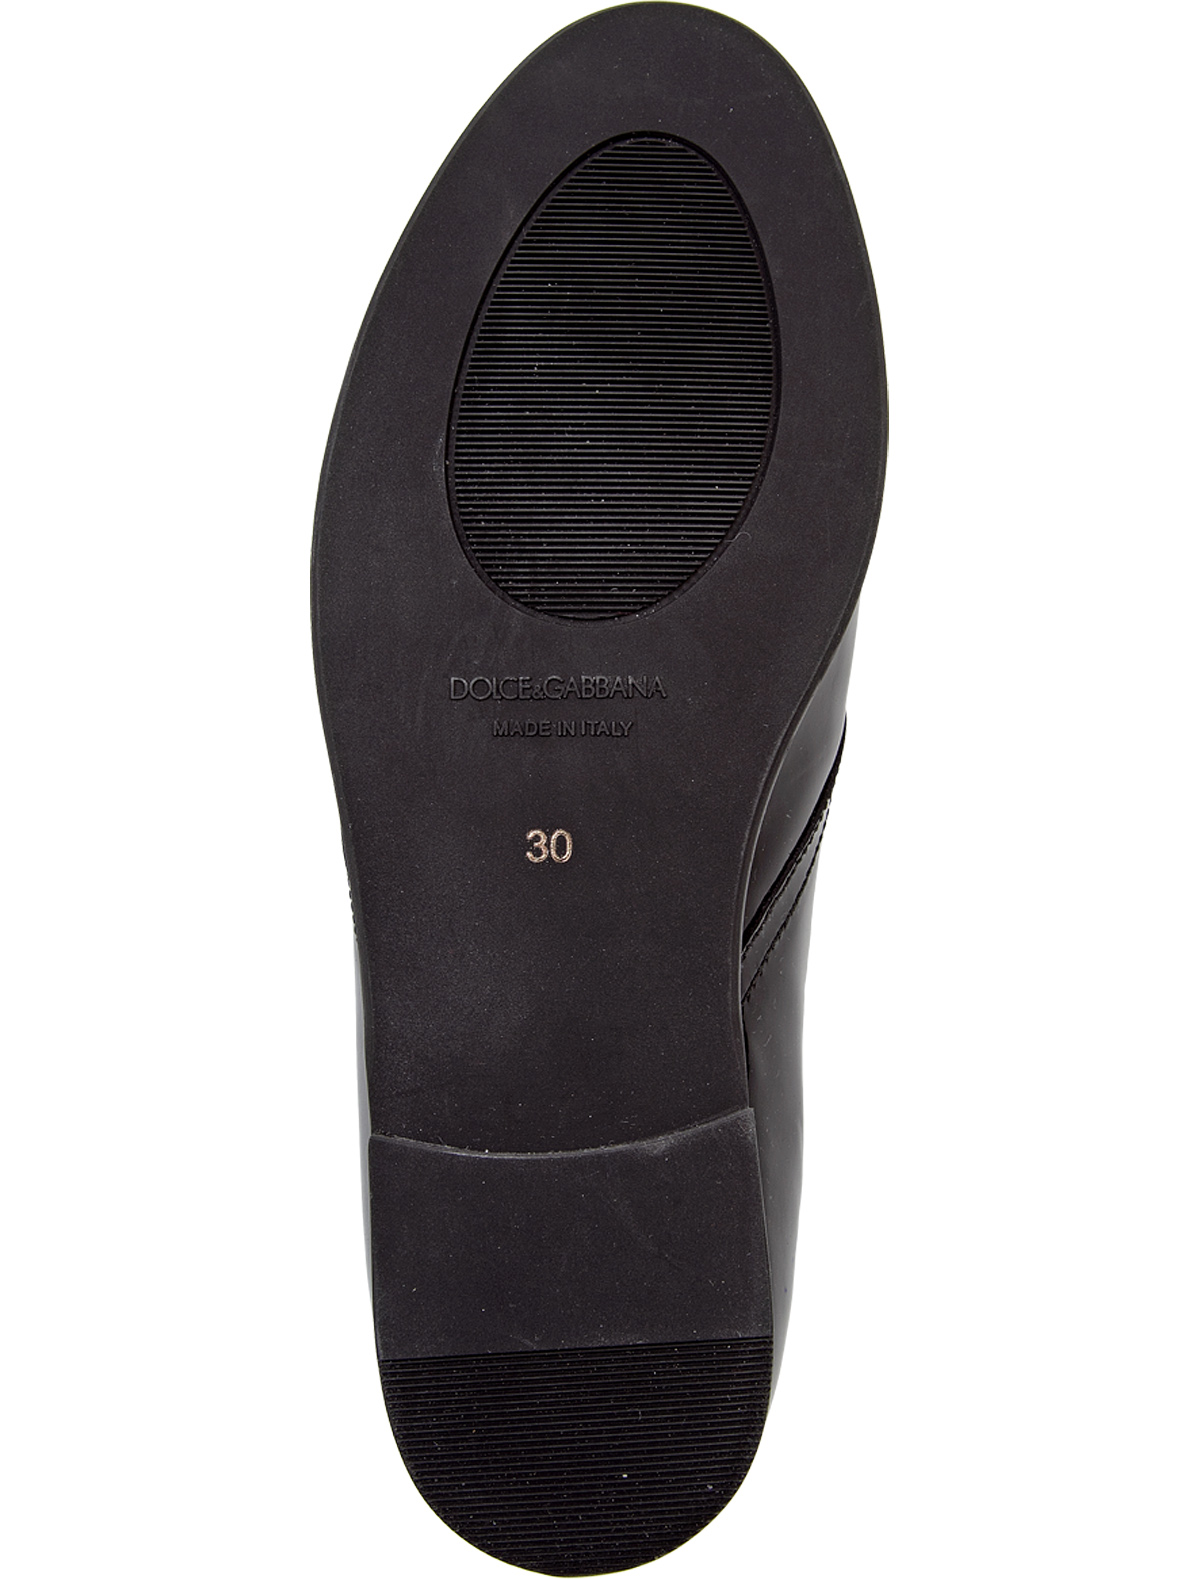 Туфли Dolce & Gabbana 1913243, цвет черный, размер 31 2011119880313 - фото 3